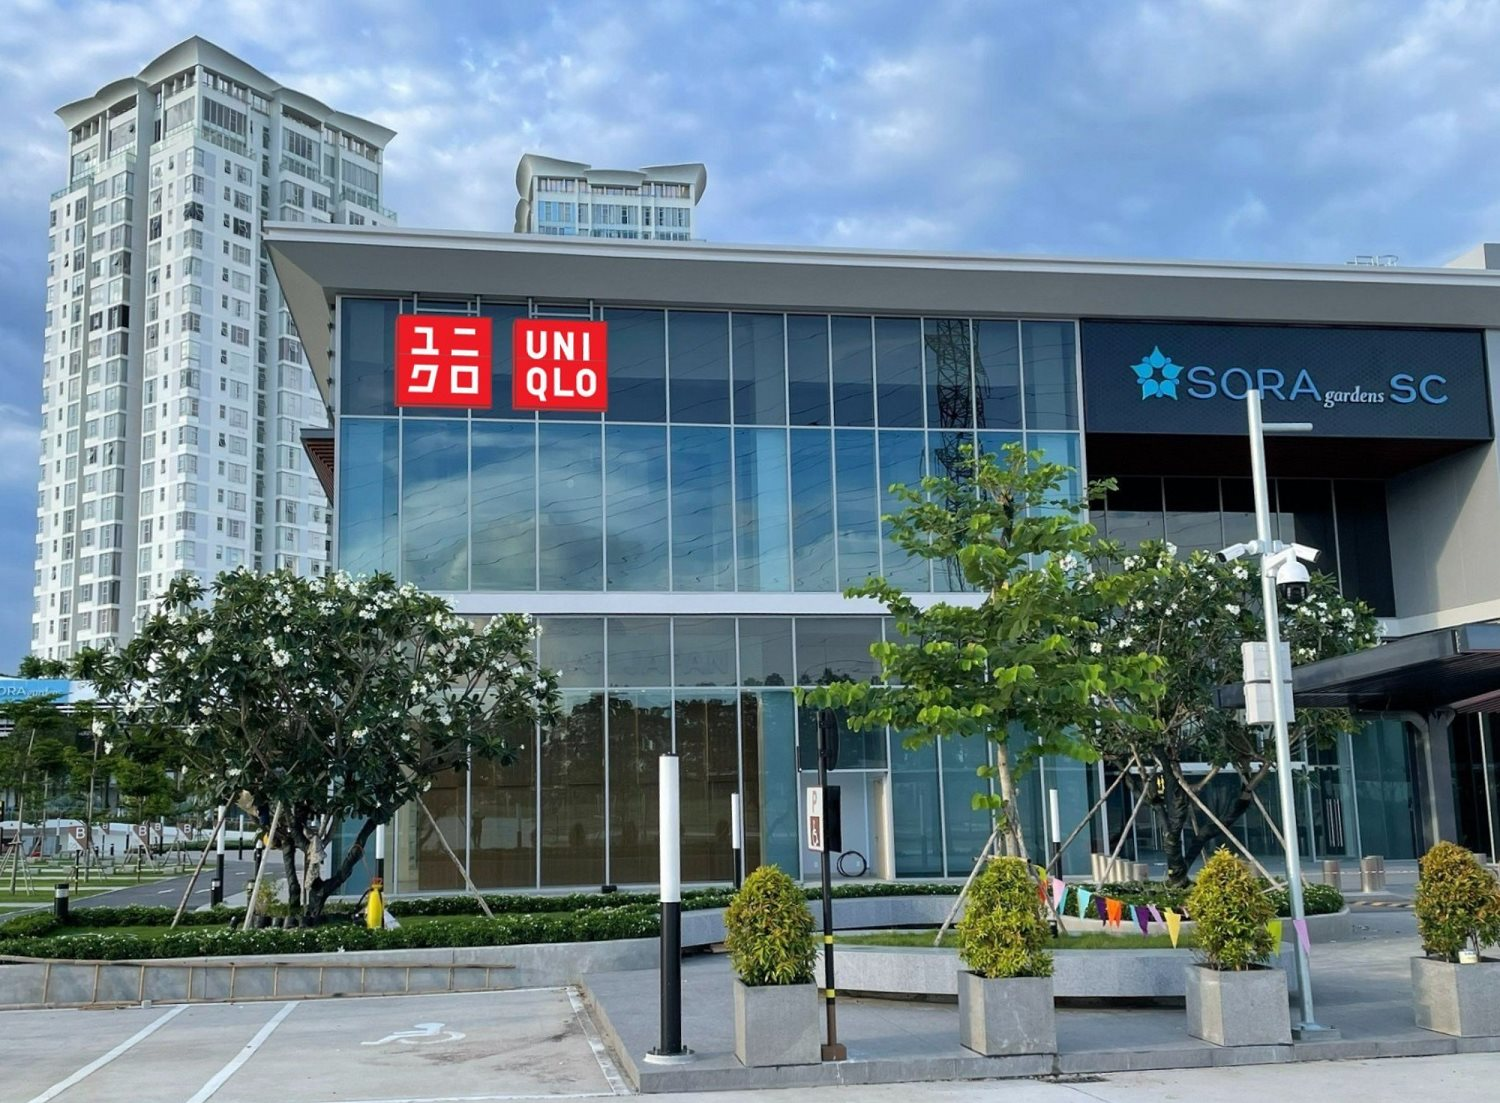 Khai trương cửa hàng đầu tiên chưa đầy tháng, UNIQLO công bố cửa hàng thứ 2 ở Bình Dương, cán mốc 20 điểm bán tại Việt Nam